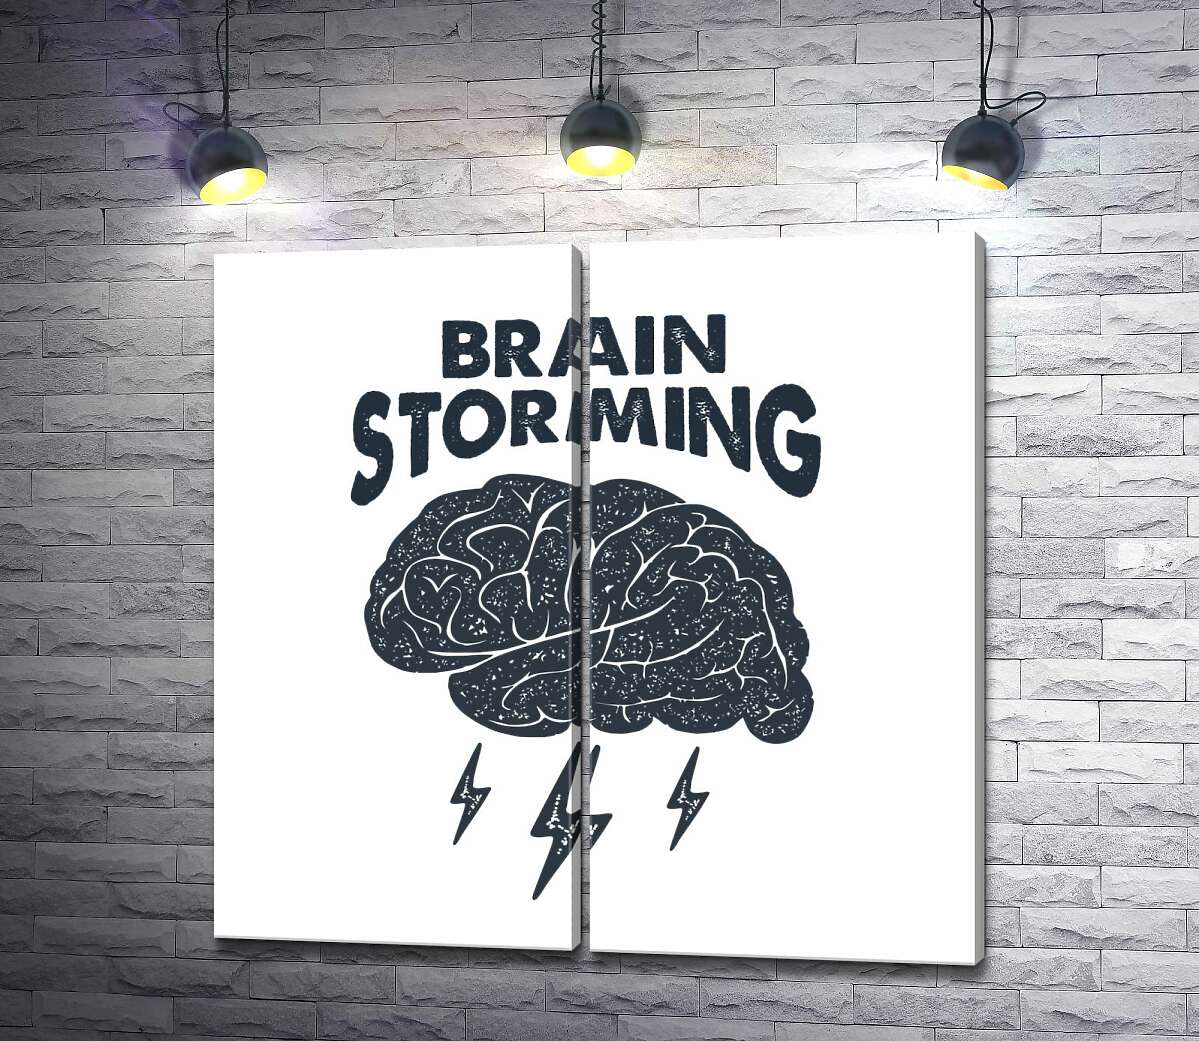 модульная картина Мозг издает молниеносные идеи наряду с фразой "brain storming"